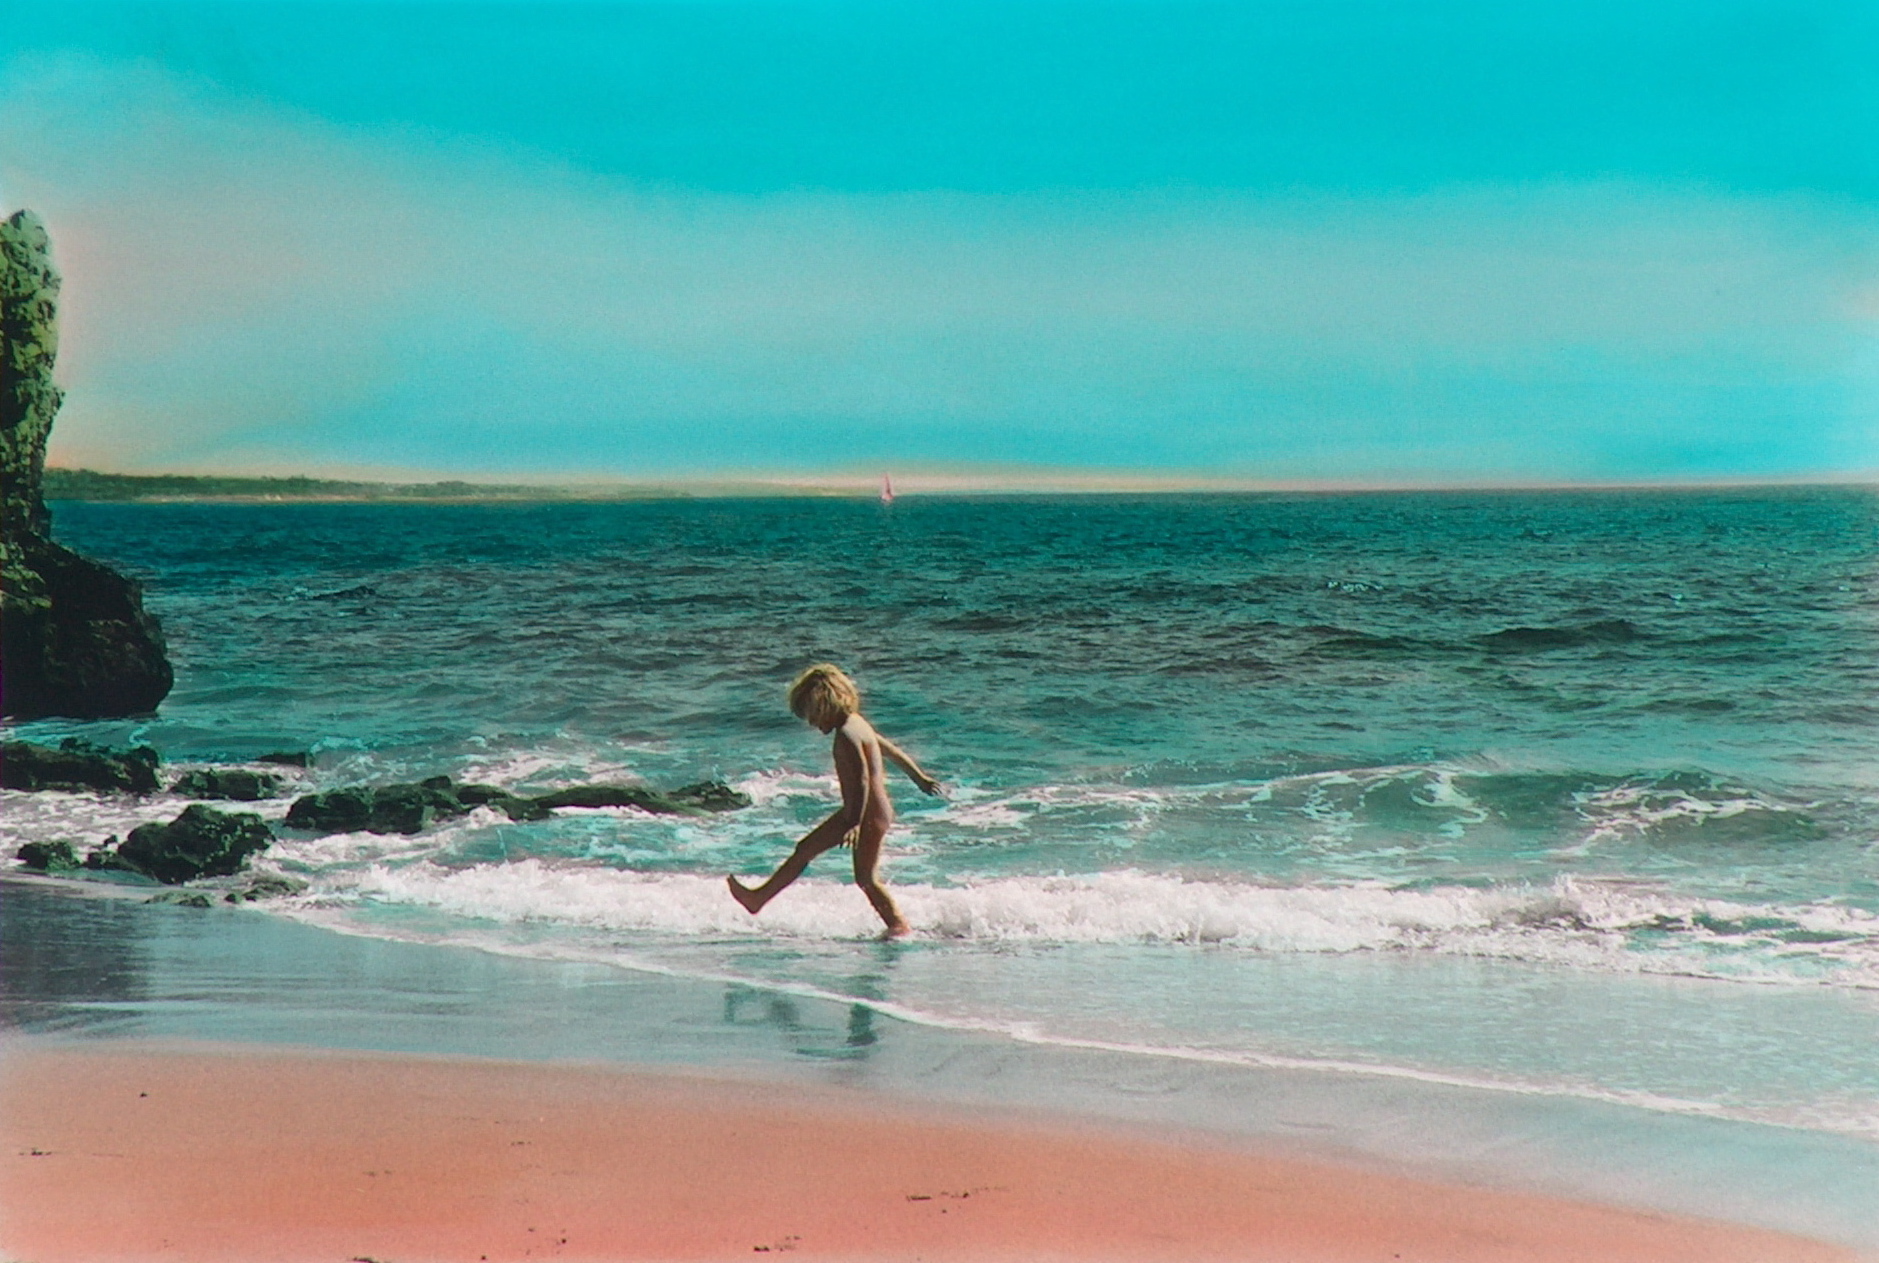 Qué precioso es el mar, 2003<br/>Tintas pigmentadas / Inkjet